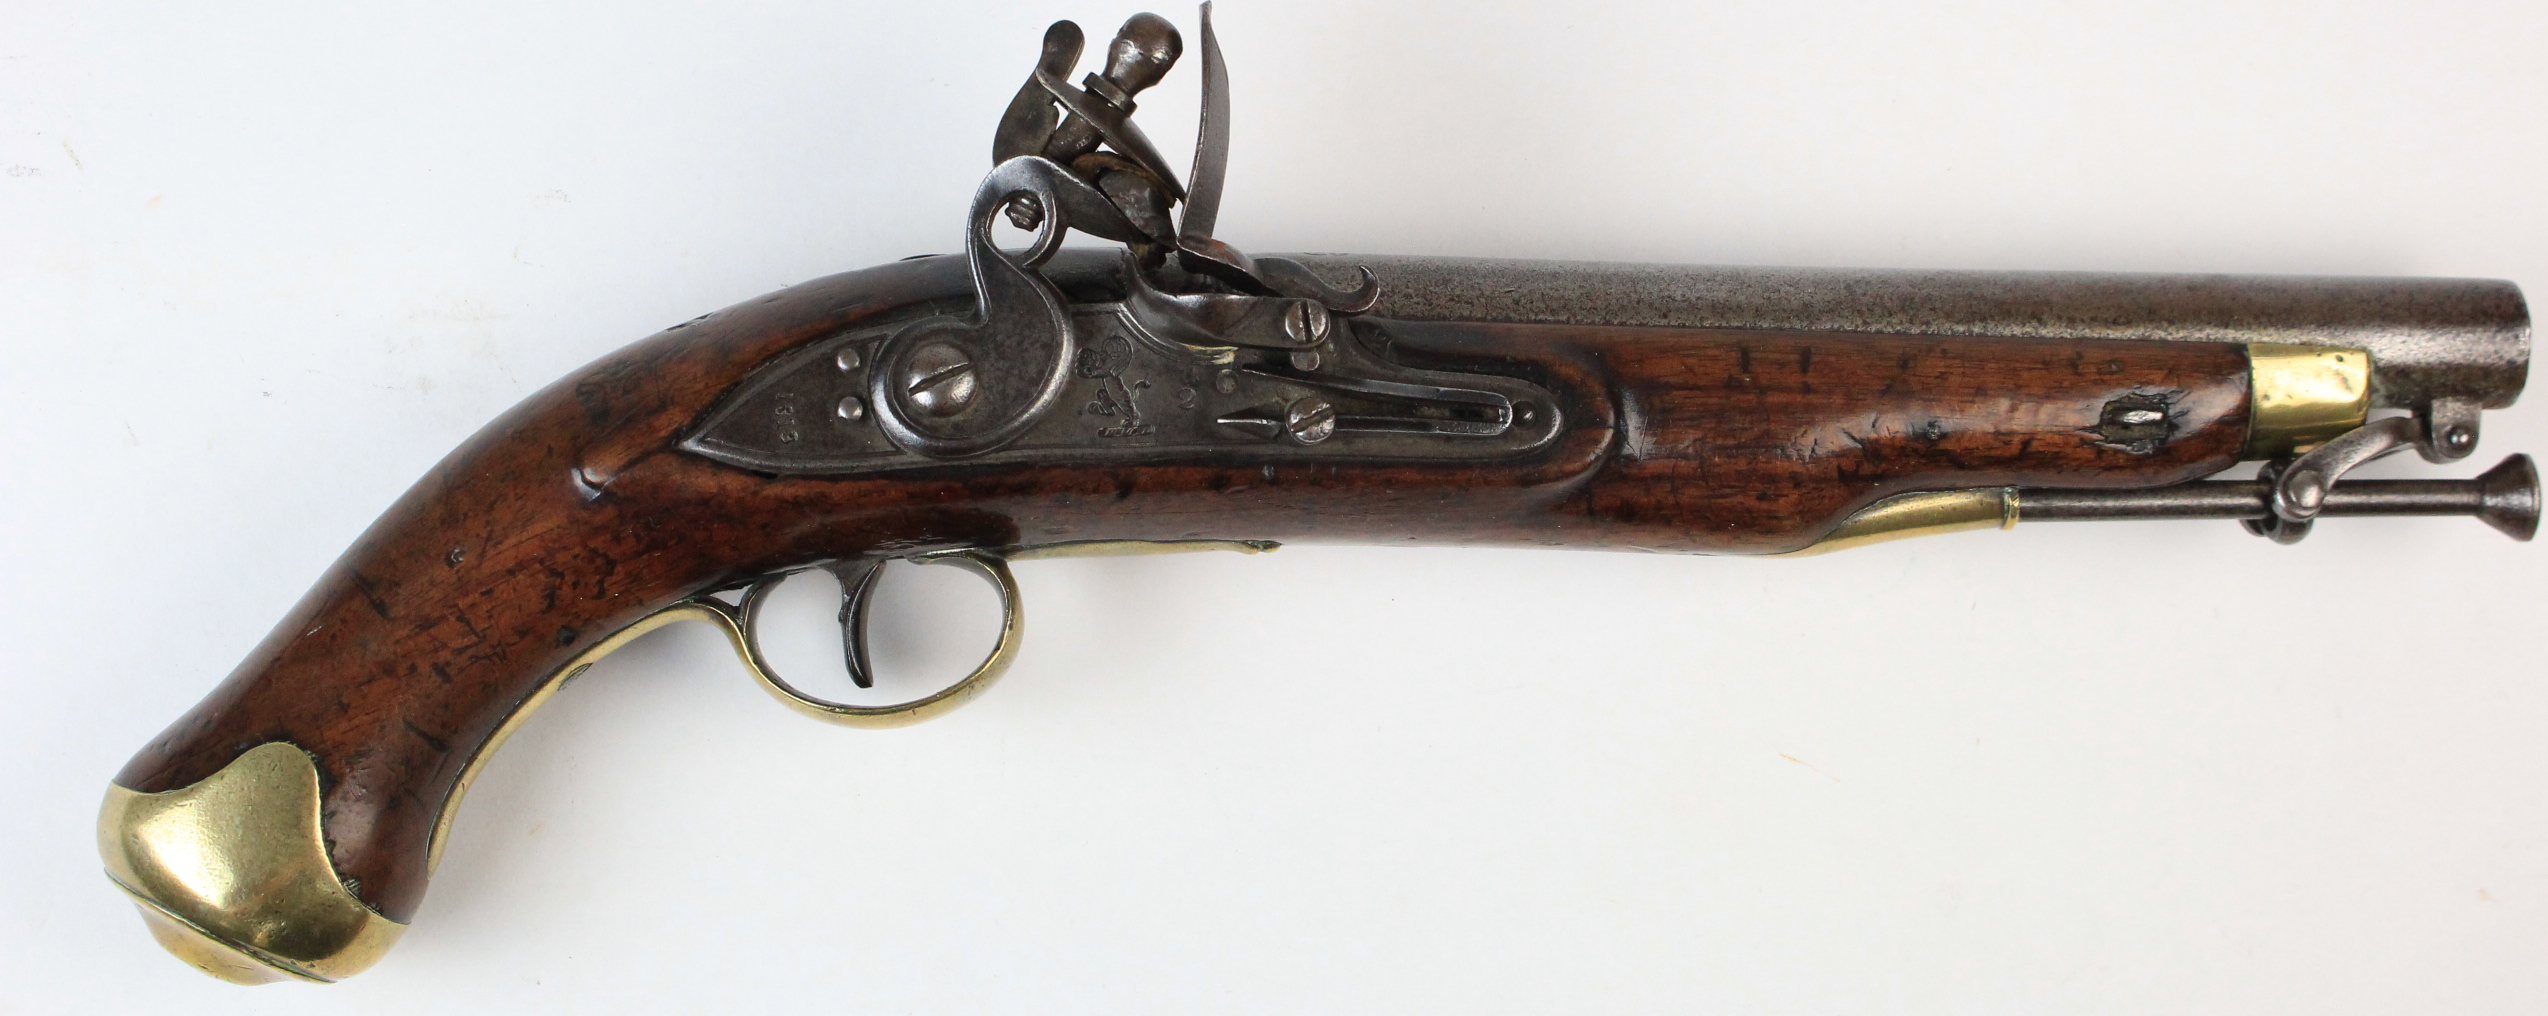 Fine East India Company Cavalry pistol, barrel 9" of carbine bore (nominally 17 bore - .66"). Long